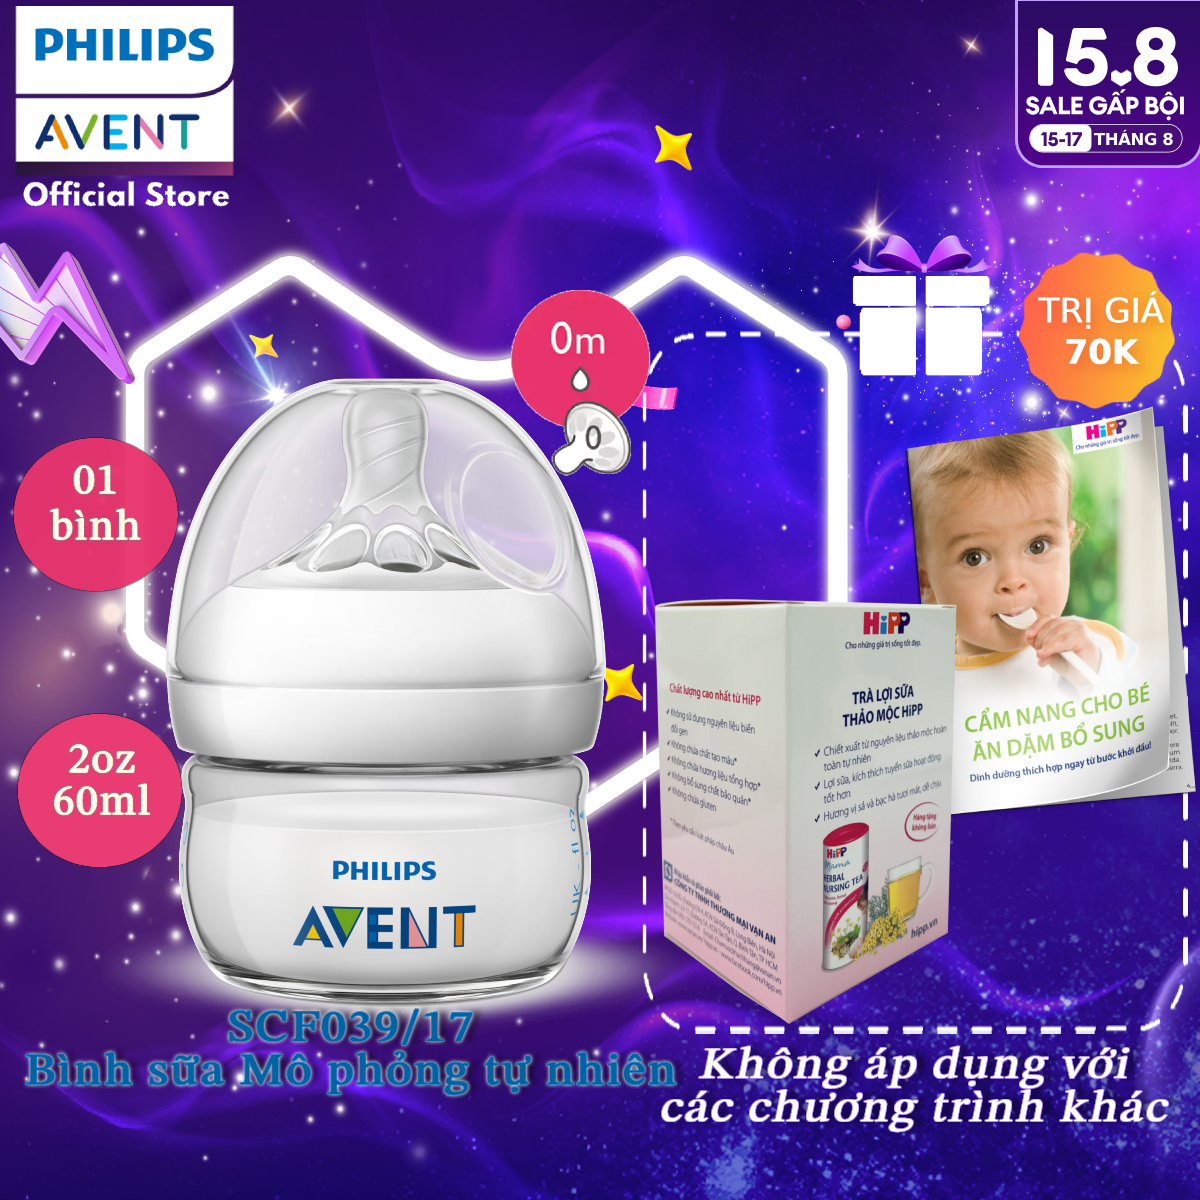 Philips Avent bình sữa mô phỏng tự nhiên 60ml cho bé sơ sinh SCF039 17